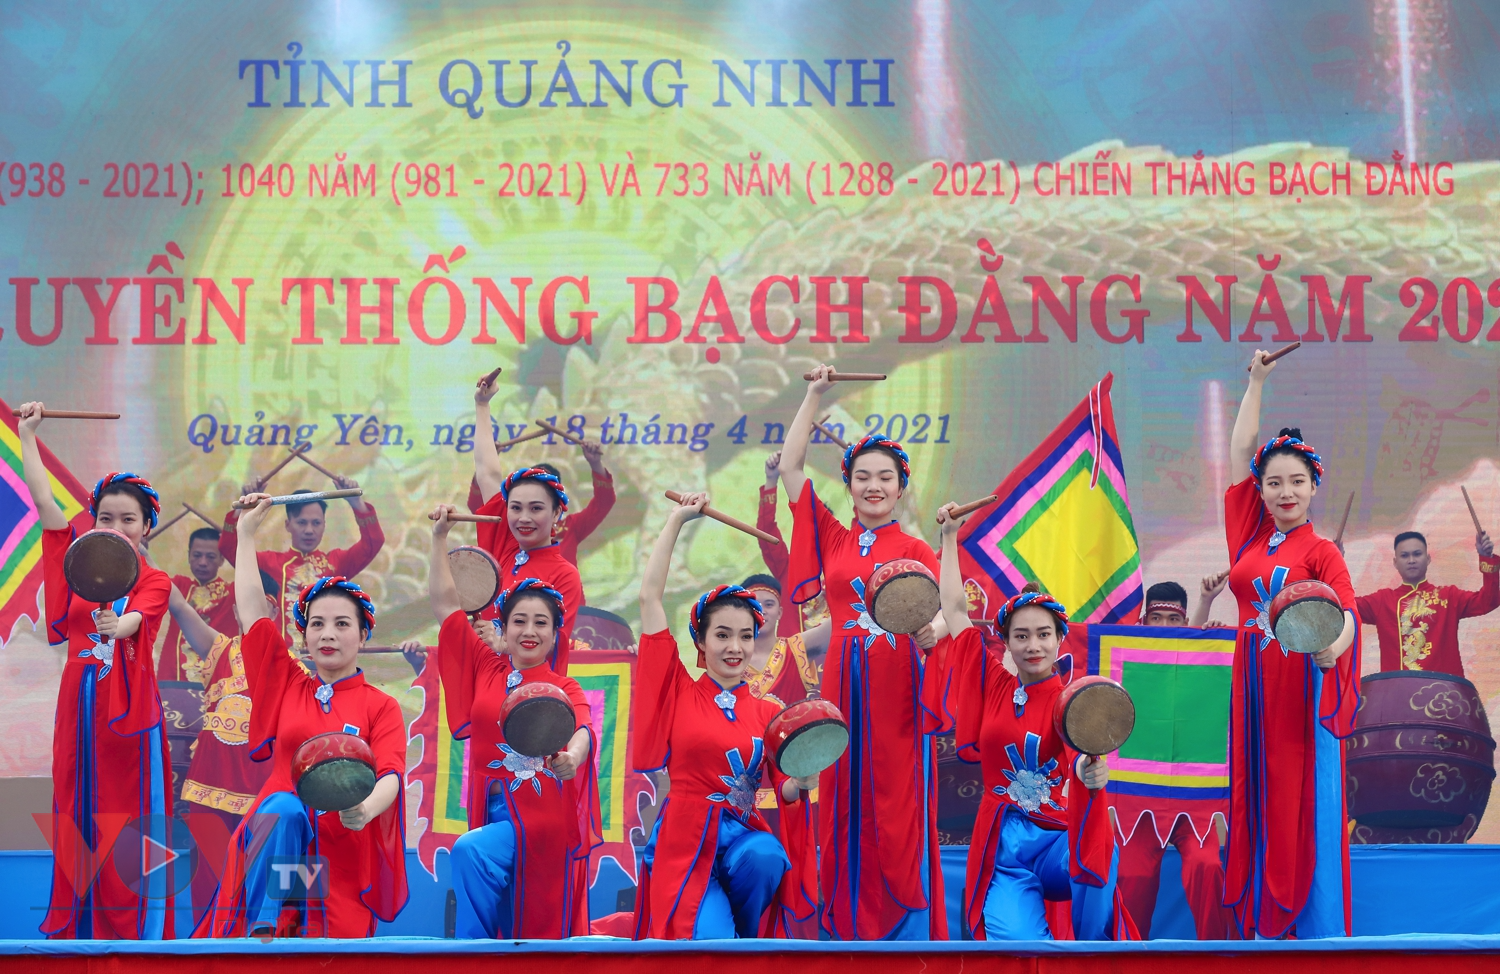 Hàng nghìn người rước tượng Trần Hưng Đạo trong lễ hội truyền thống Bạch Đằng - Ảnh 2.